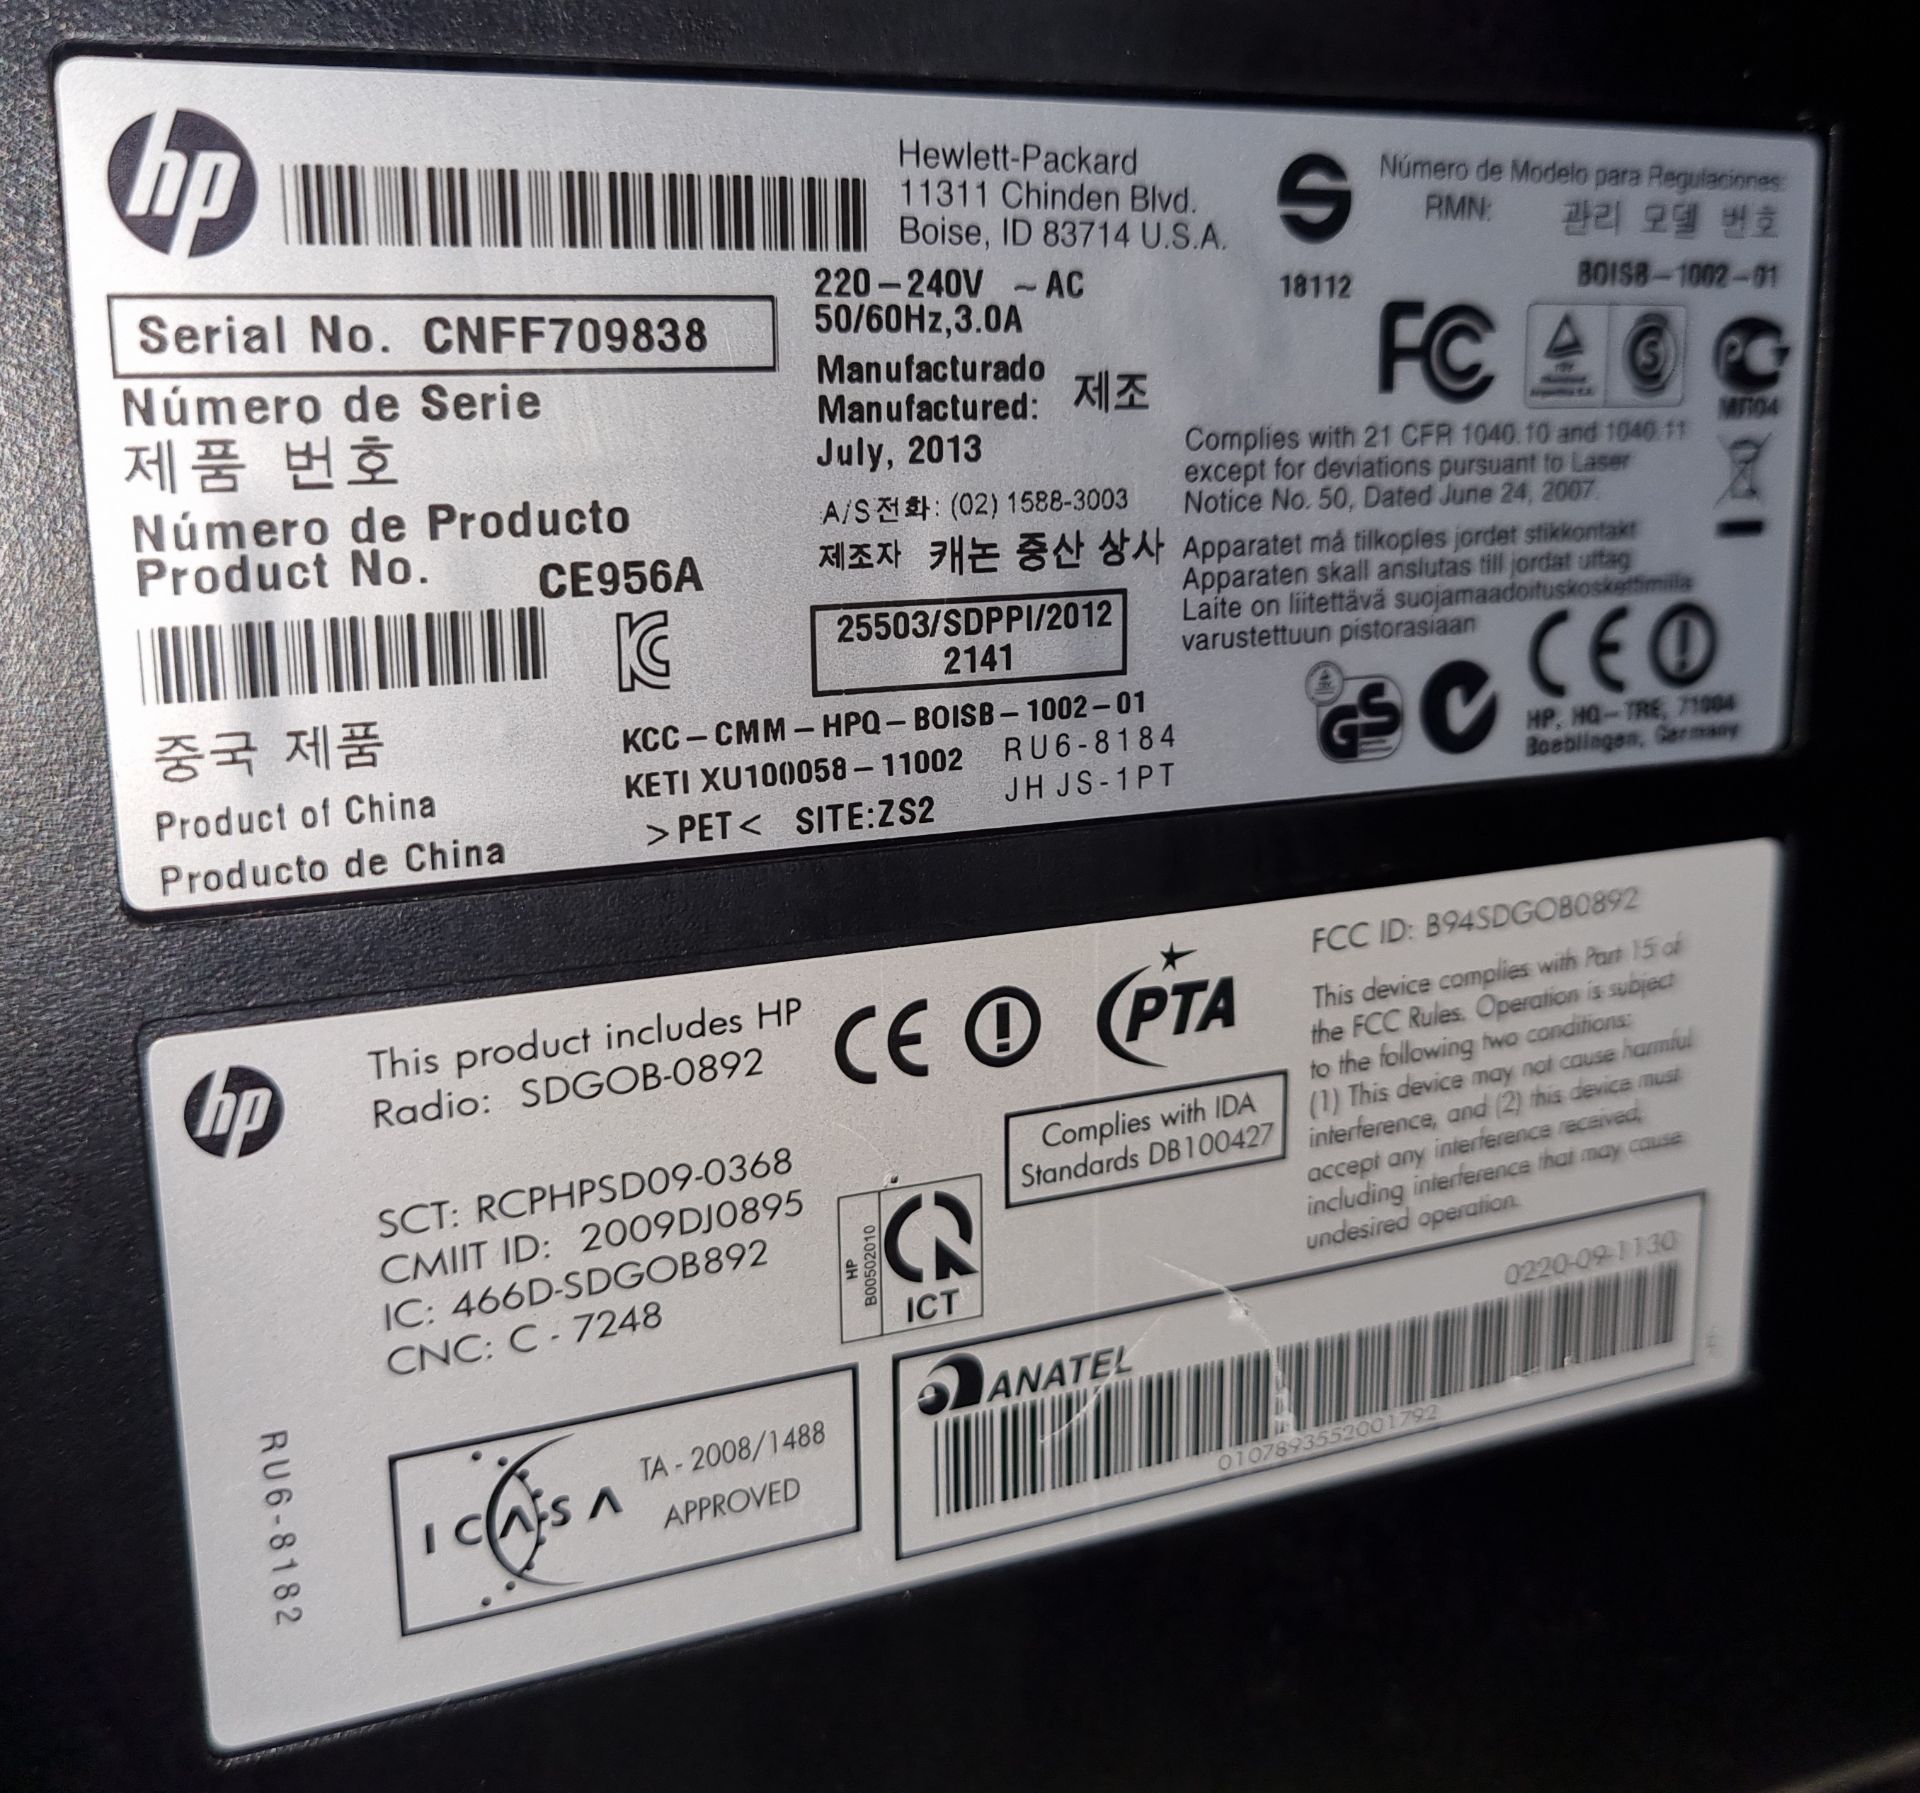 HP Laserjet Pro 400 color printer - Image 5 of 5